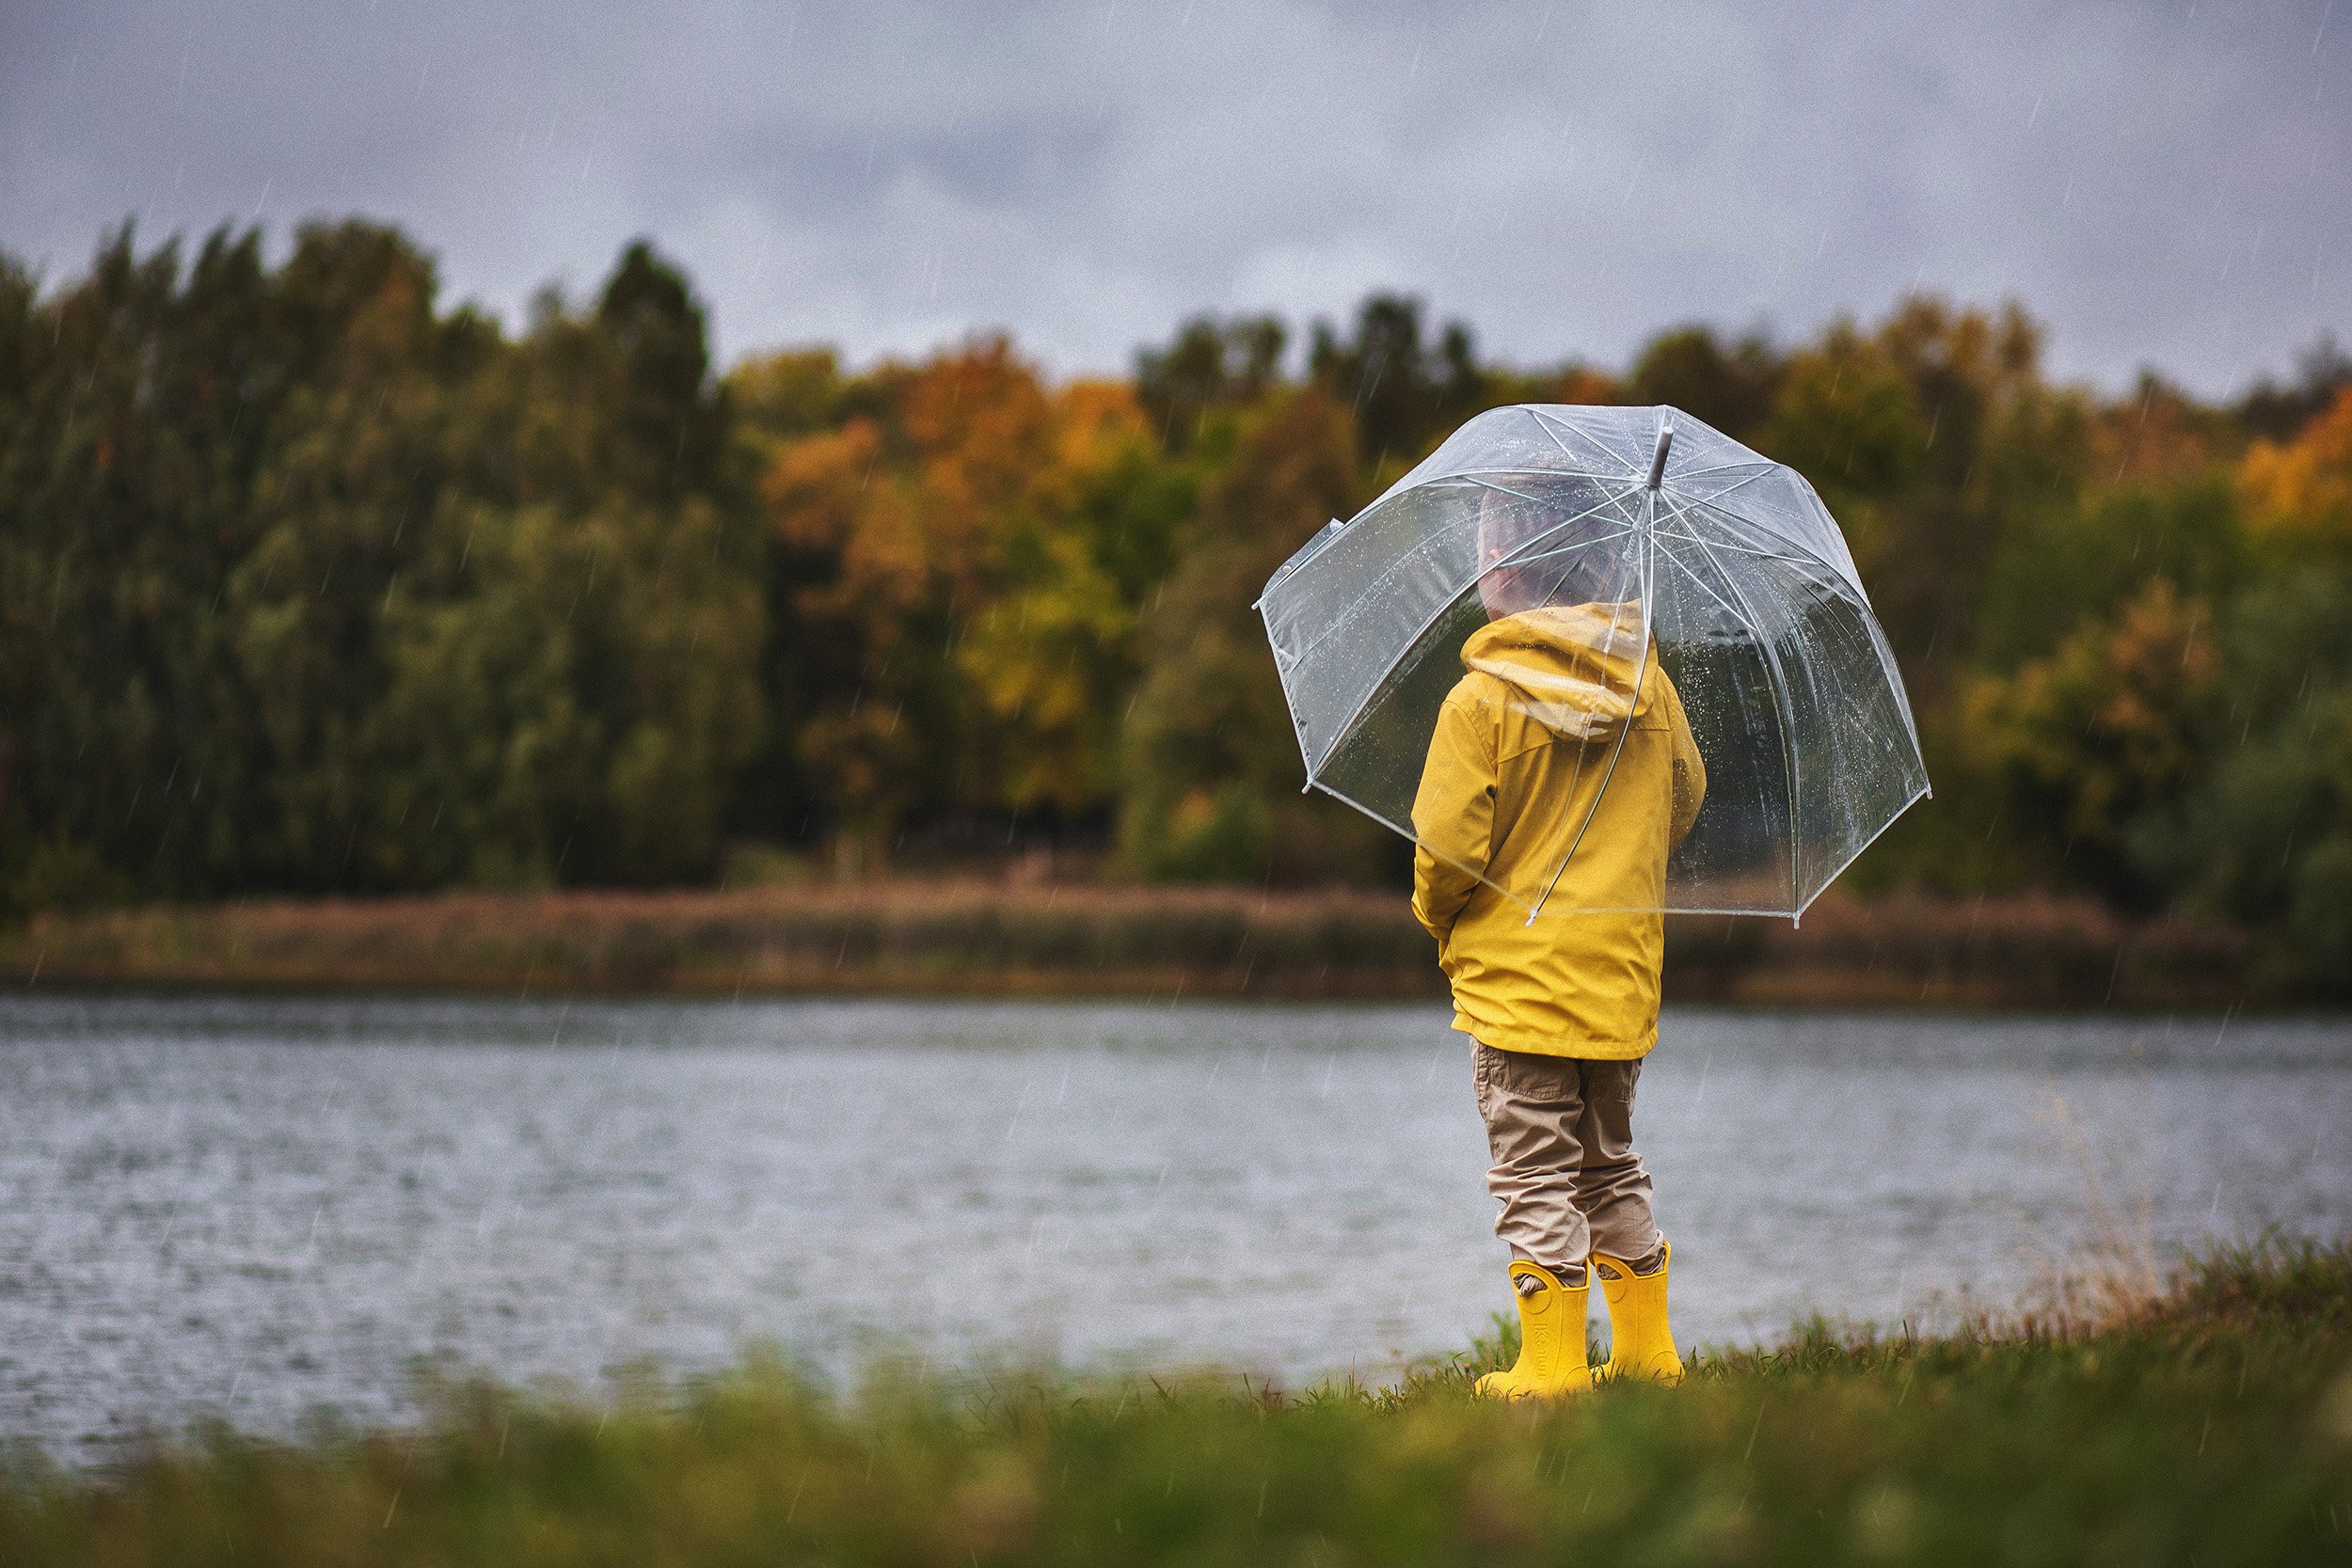 осень, зонт, прозрачный, желтый, дождь, октябрь, капли, водонепроницаемый, сапоги, оеро, парк, природа, берег, водоем, Мила Шелест